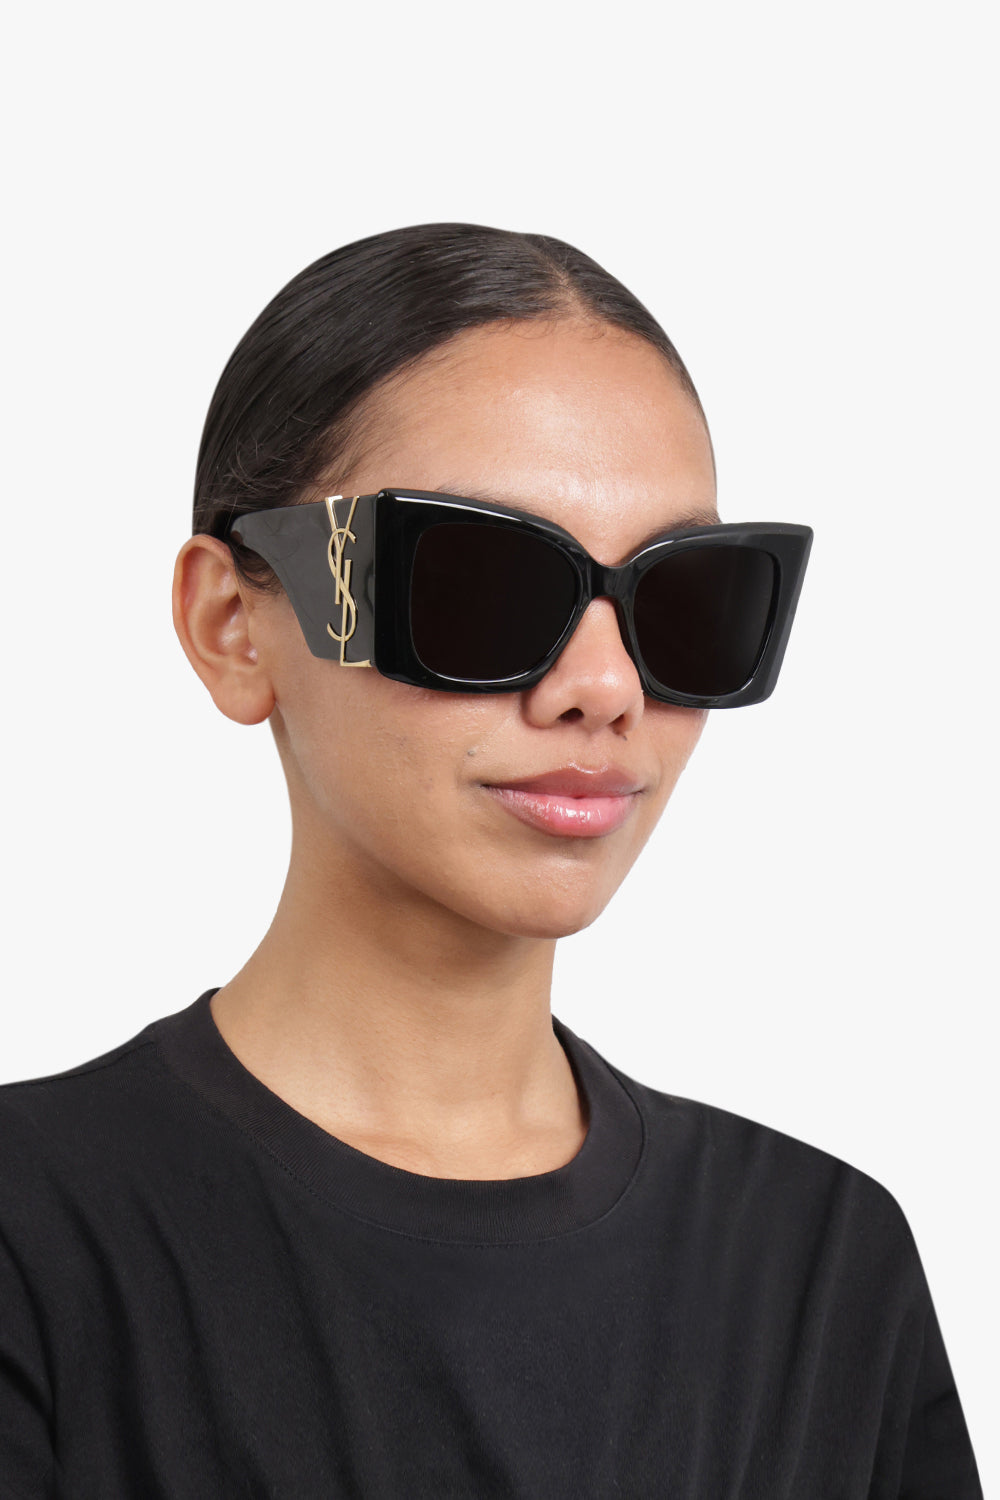 SAINT LAURENT ACCESSORIES BLACK / BLACK/GOLD Large Logo Sunglasses | Black/Gold